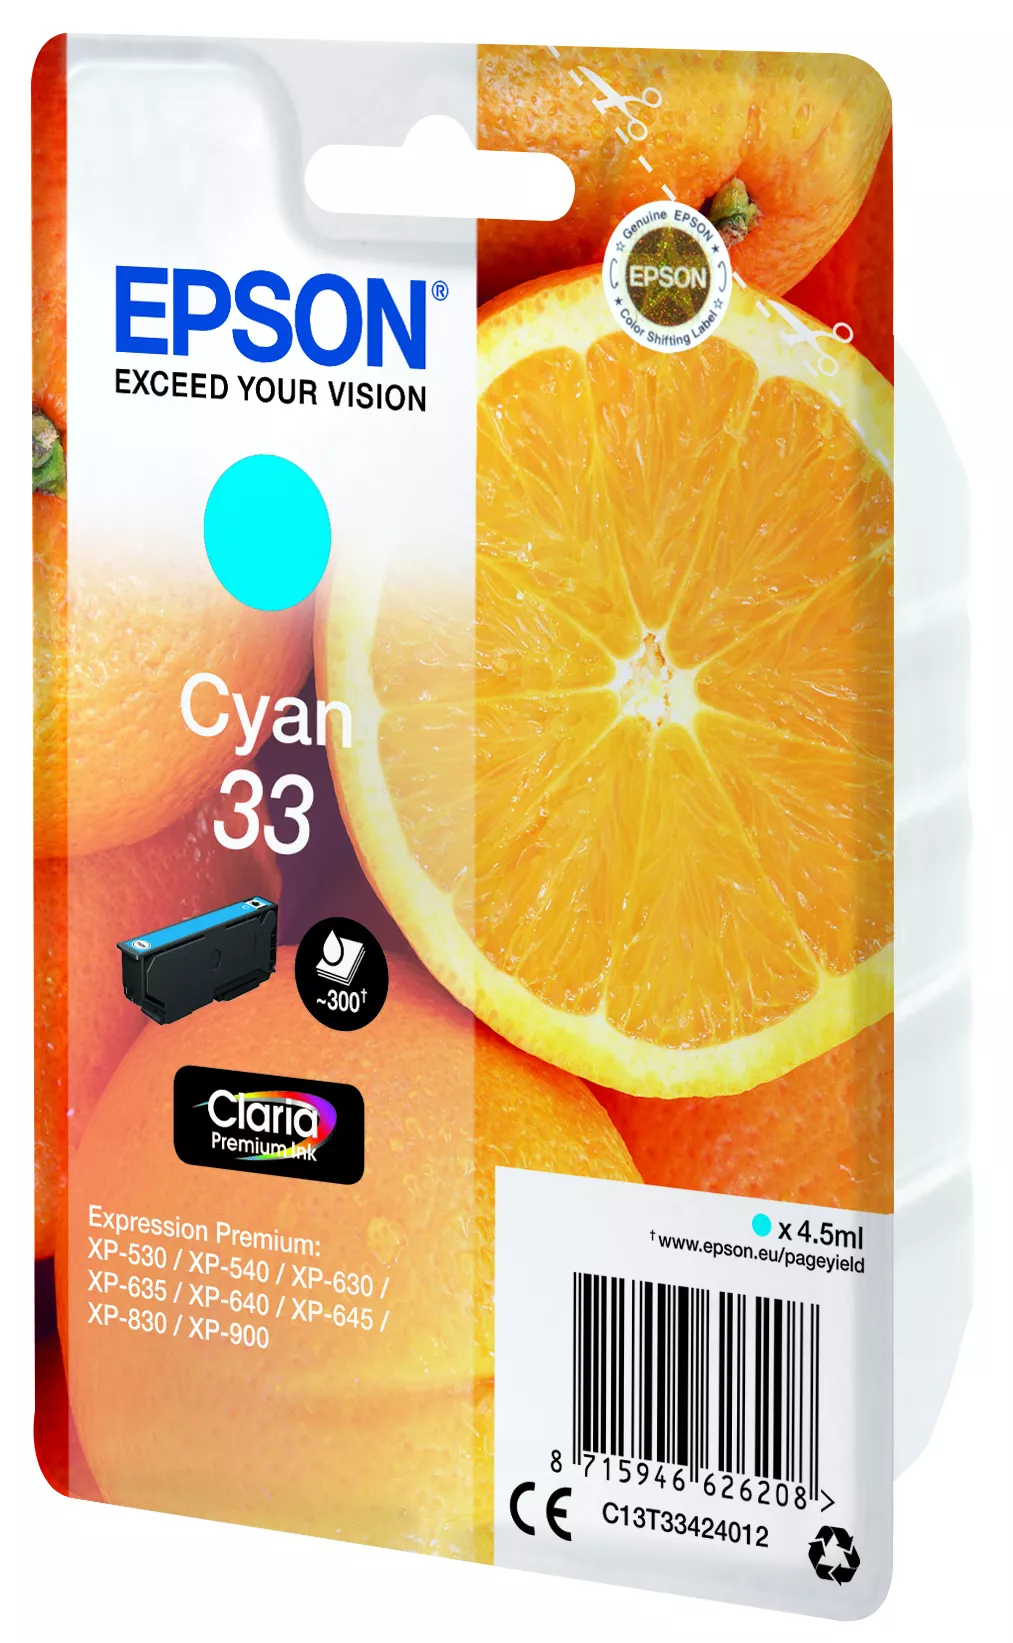 Vente EPSON Cartouche Oranges Encre Claria Premium Cyan Epson au meilleur prix - visuel 4